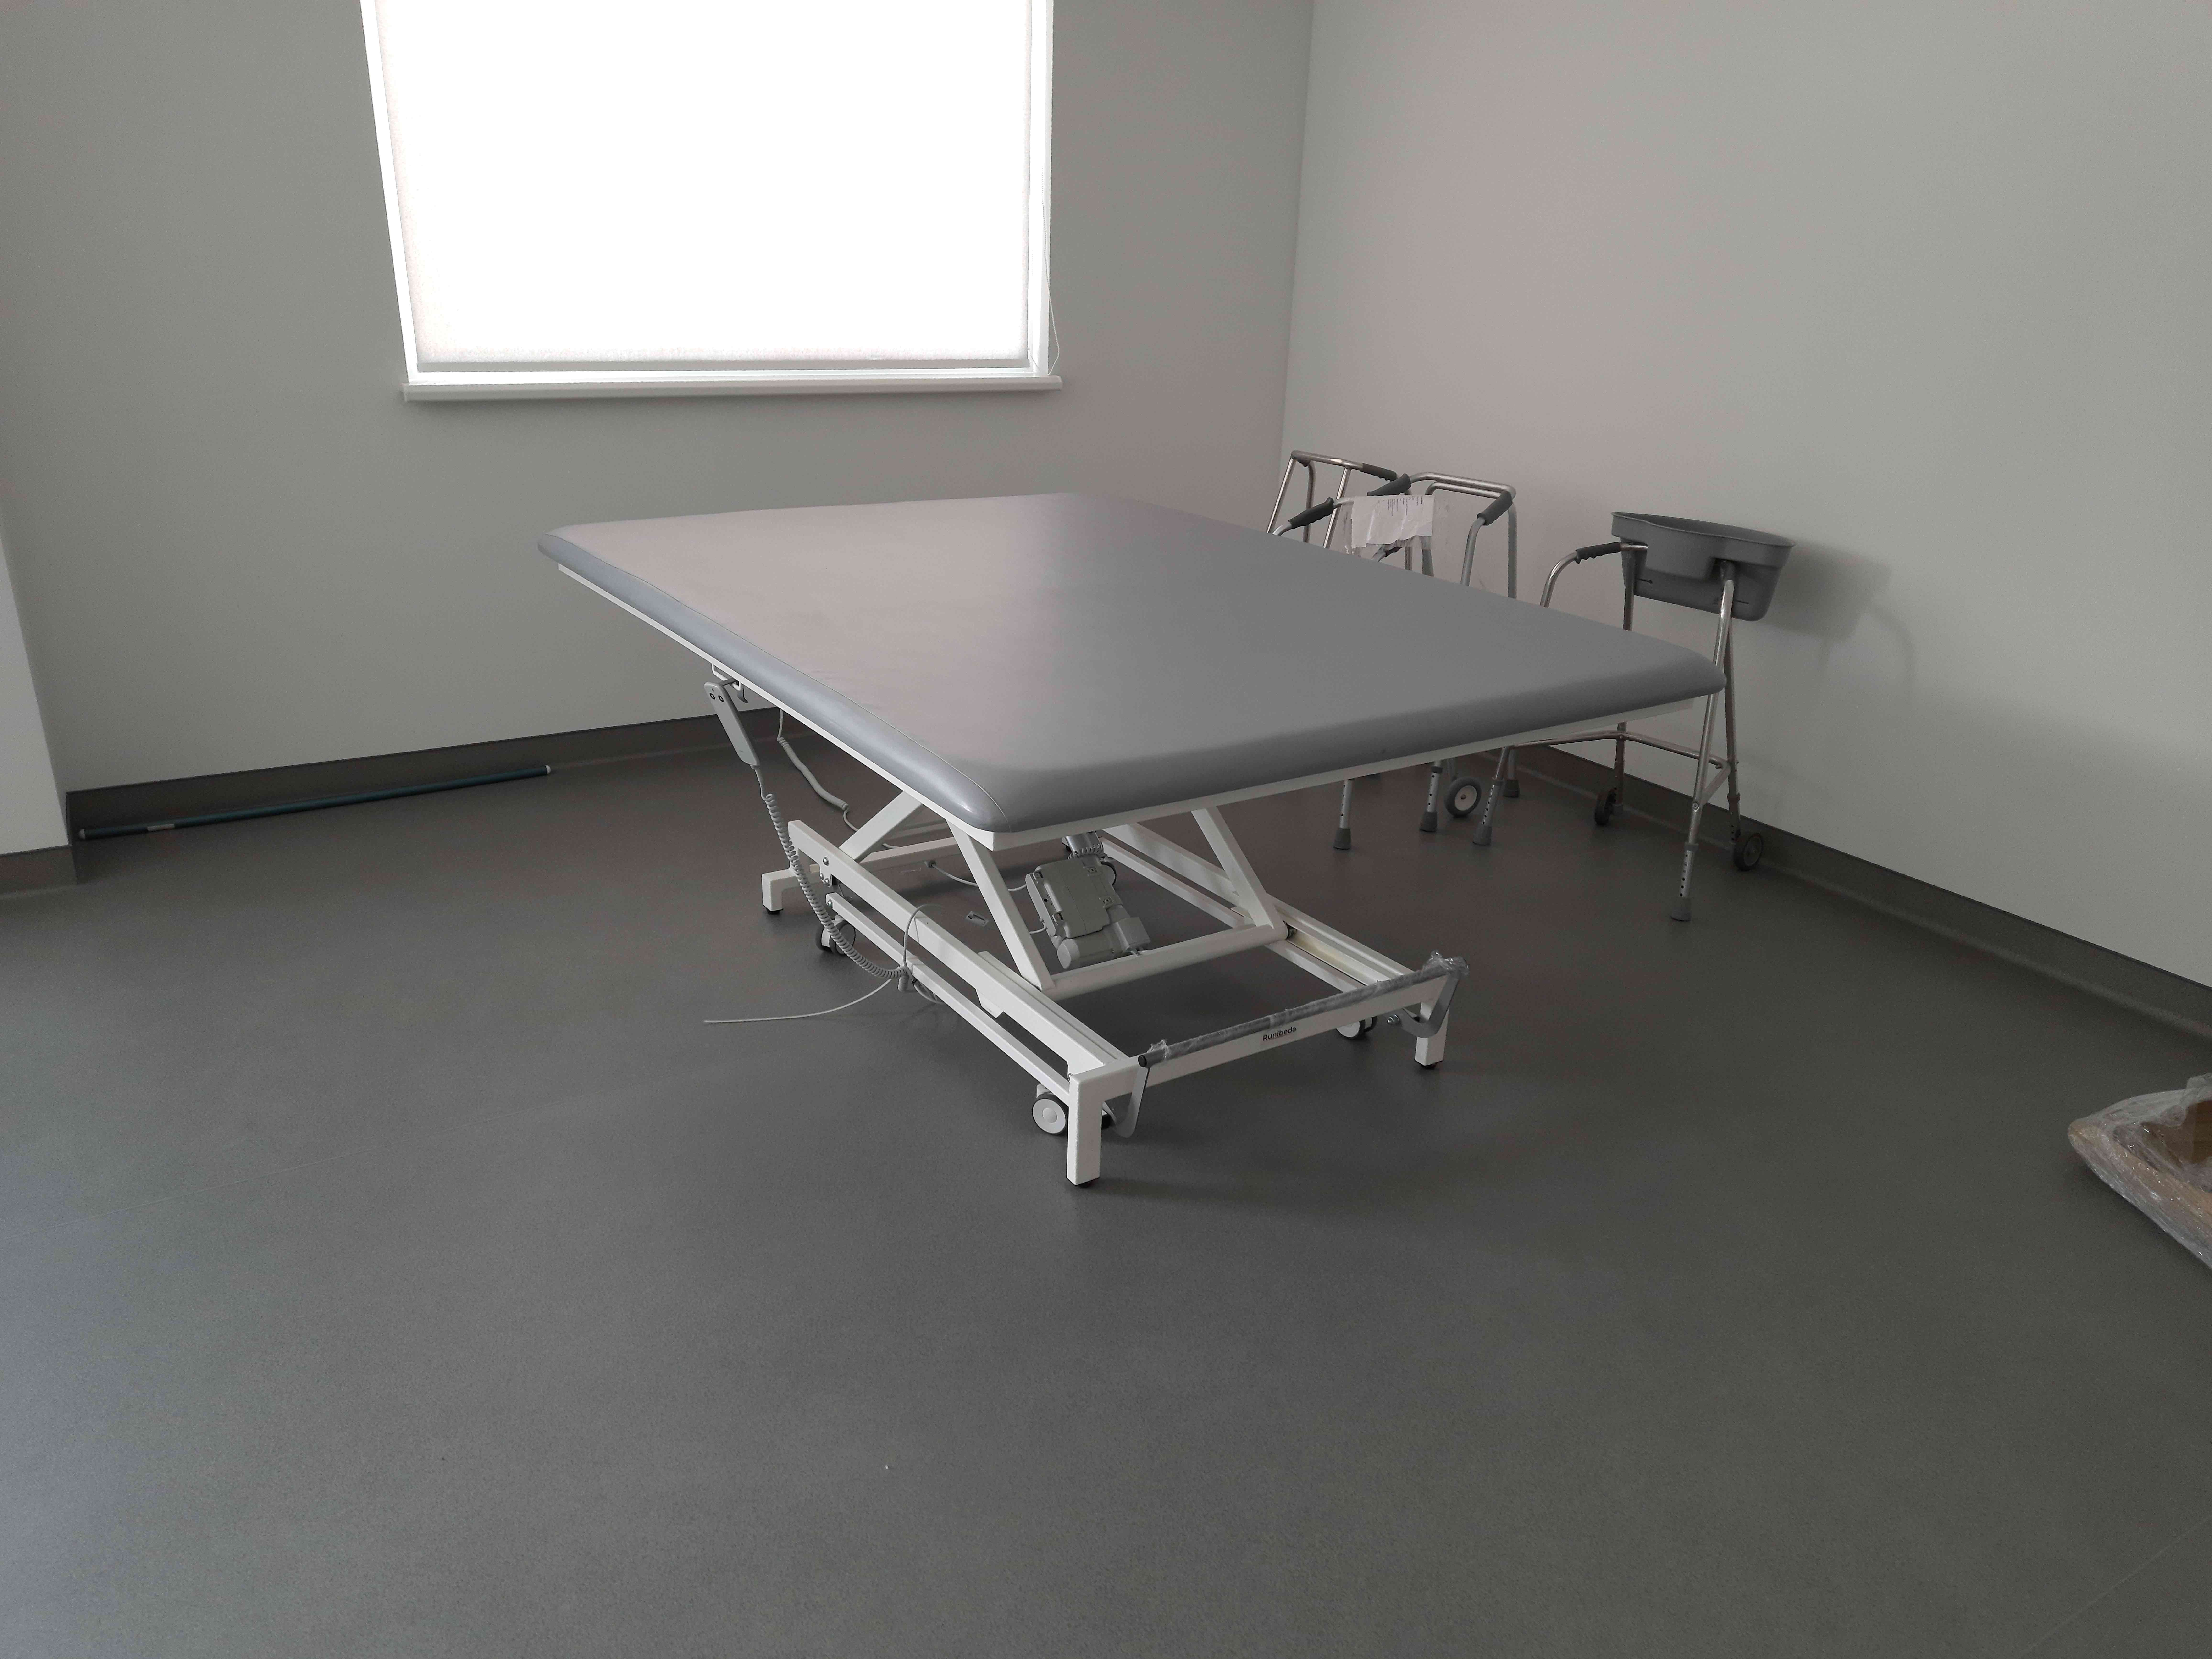 Реабілітаційні столи для терапії Войта-Бобата